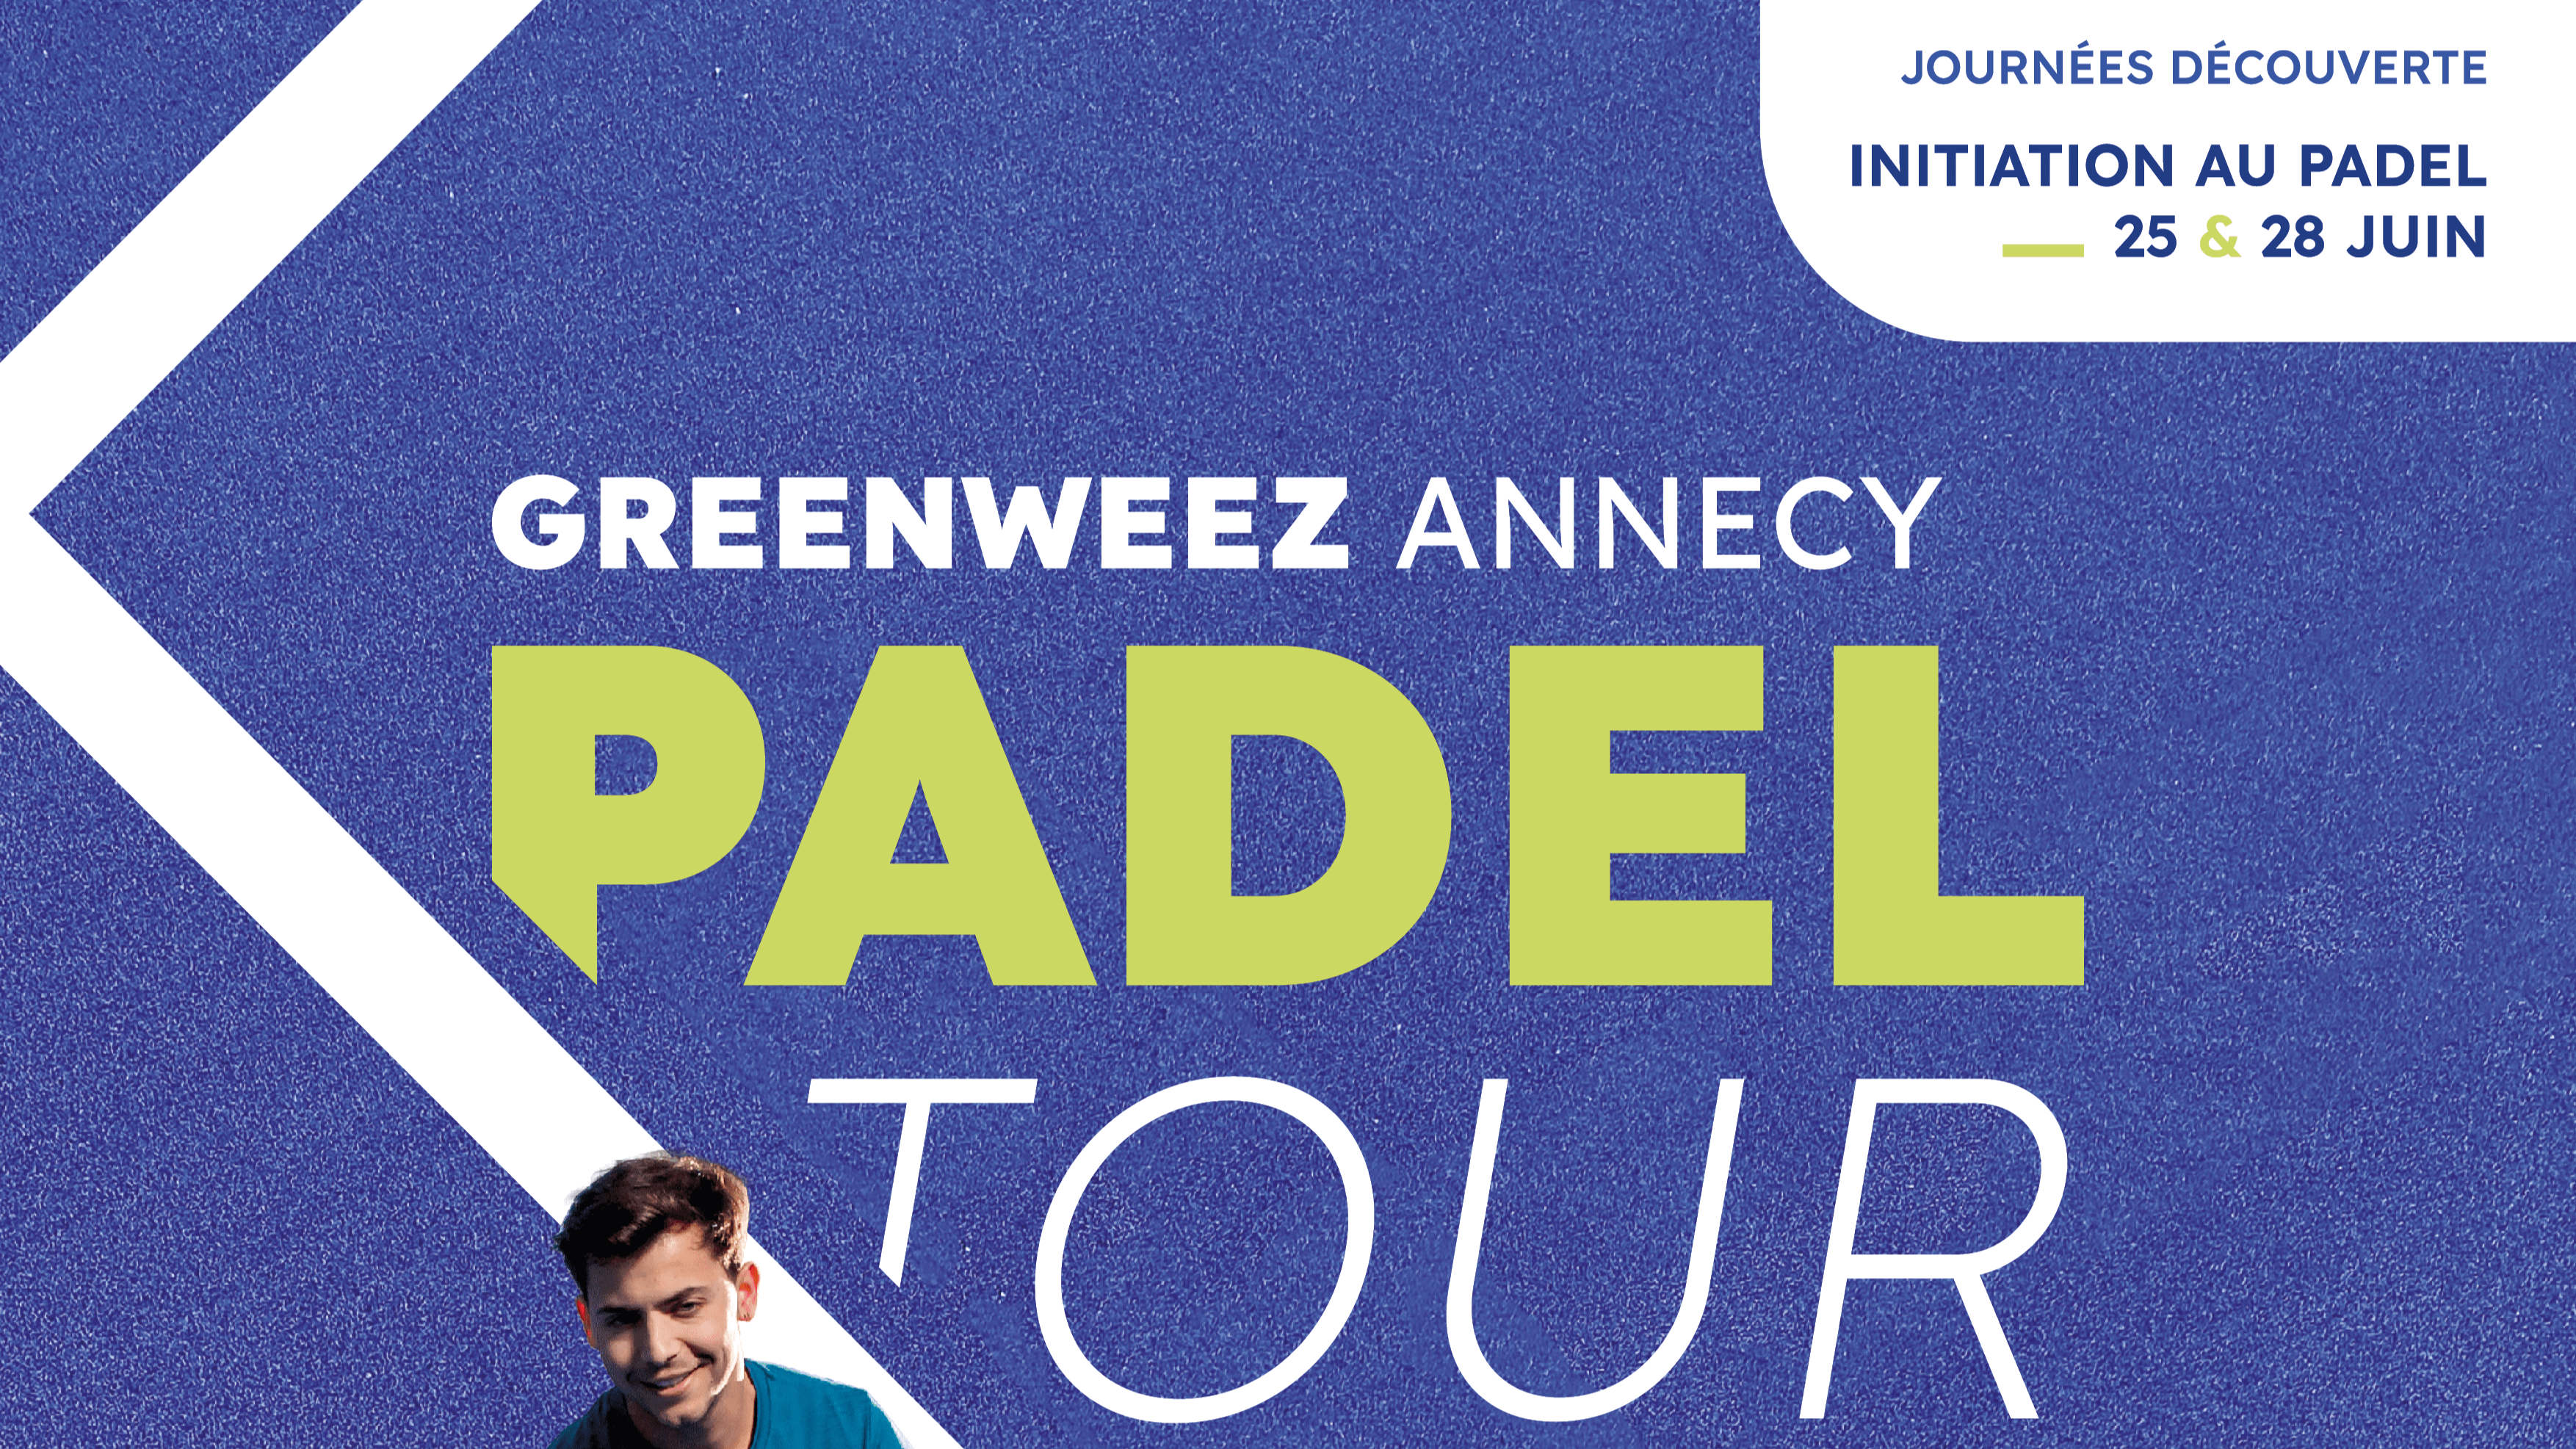 Greenweez Annecy Padel Tour förbereder sig för att animera Haute-Savoie